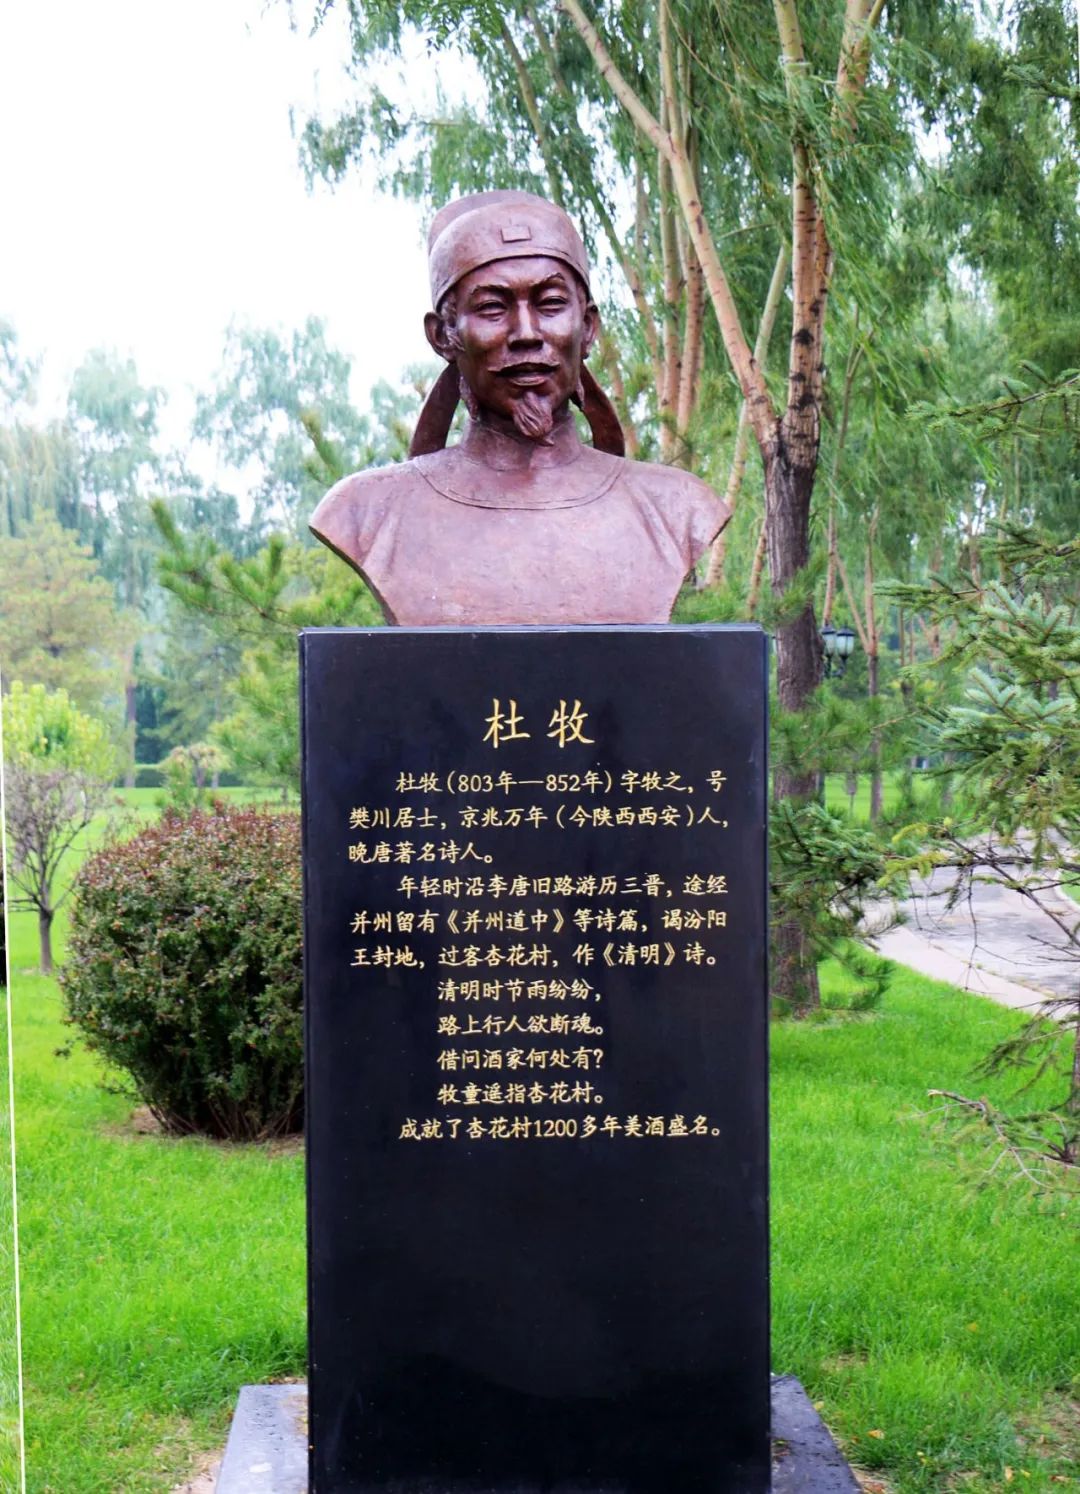 汾酒厂区中的杜牧雕像汾酒文化博物馆里收藏有许多关于《清明》诗的